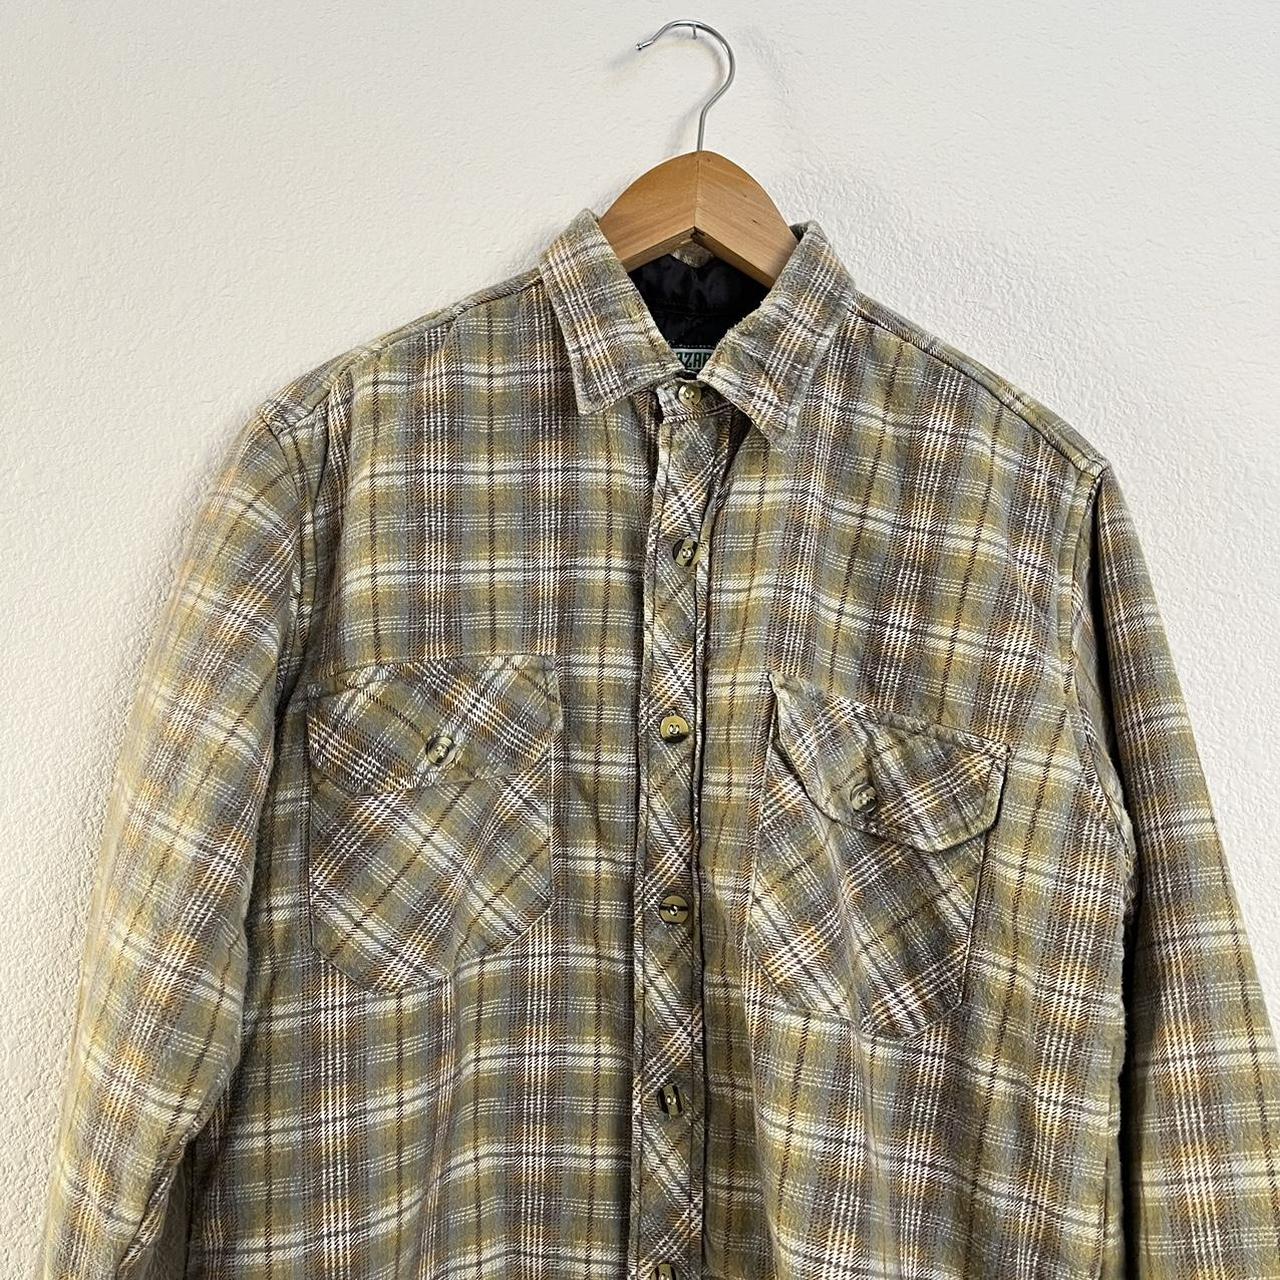 Vintage ‘90s men’s flannel jacket 🧸 Men’s M/L dm for... - Depop